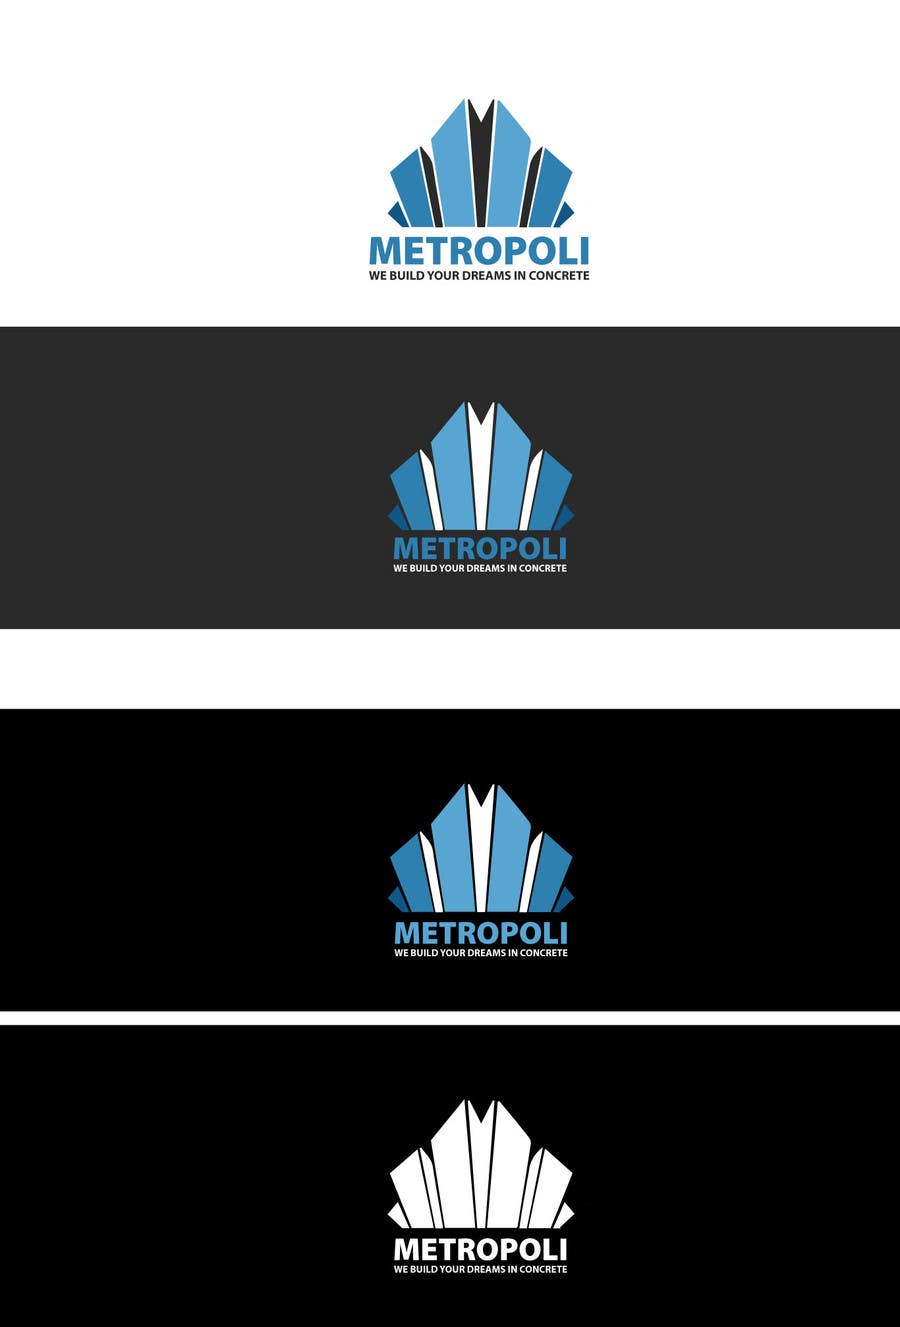 Penyertaan Peraduan #6 untuk                                                 Design a Logo for Metropoli
                                            